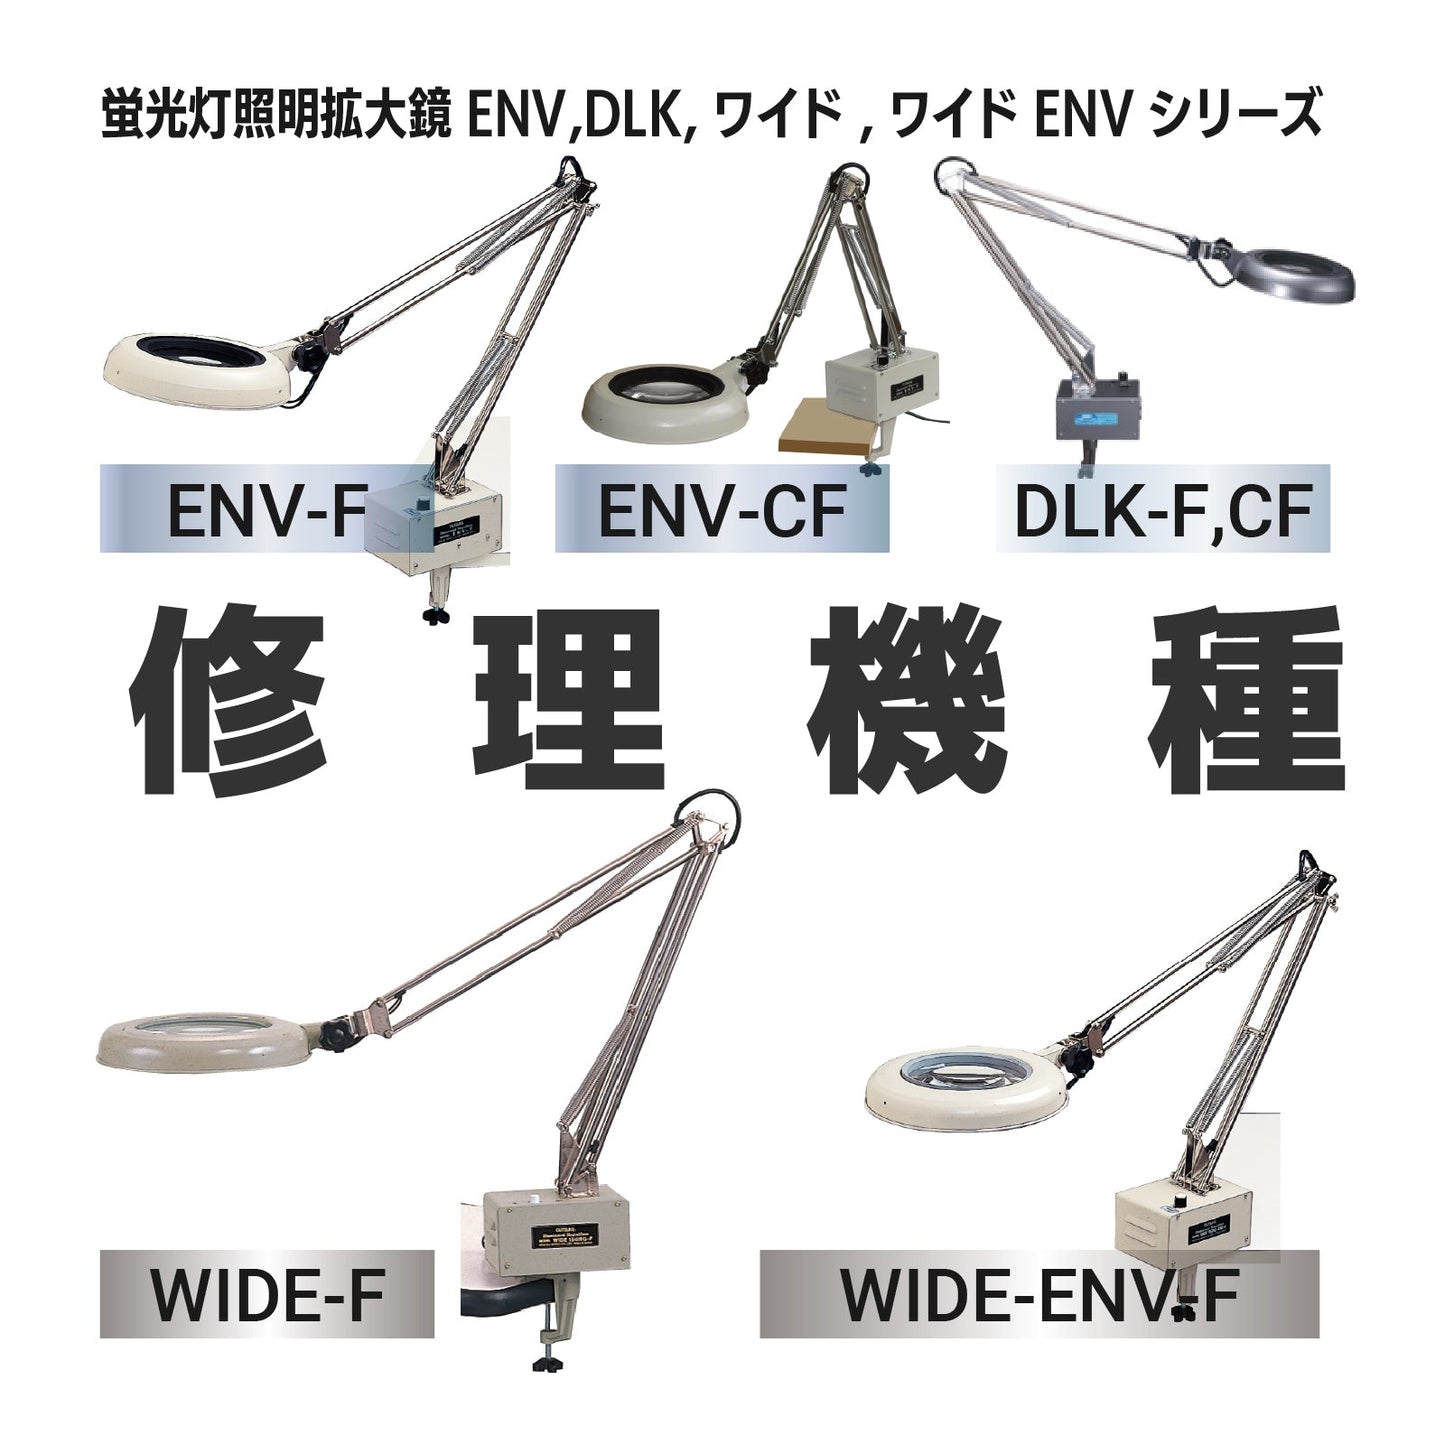 Serie ENV: ENV-F,CF / Serie DLK: DLK-F,CF / Wide-F/Wide-ENV-F serie: Wide-F, Wide-ENV-F